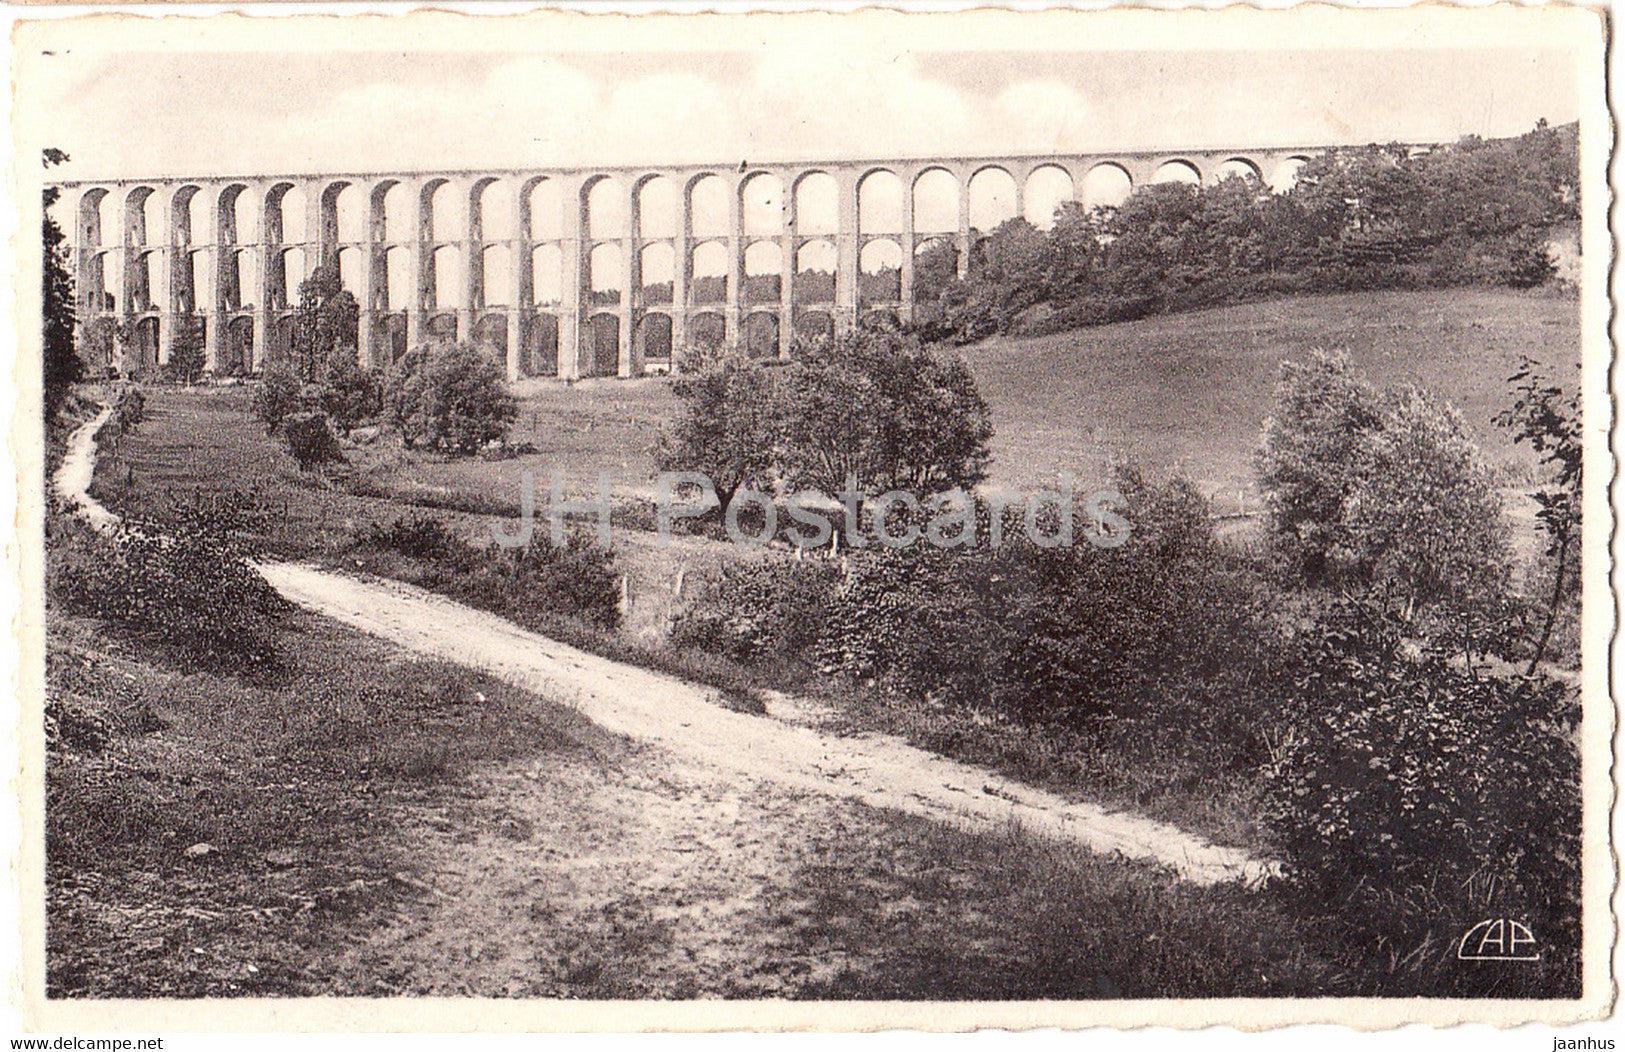 Chaumont - Le Viaduc  long 654 m - Vallee de la Suize - 91 - old postcard - France - unused - JH Postcards